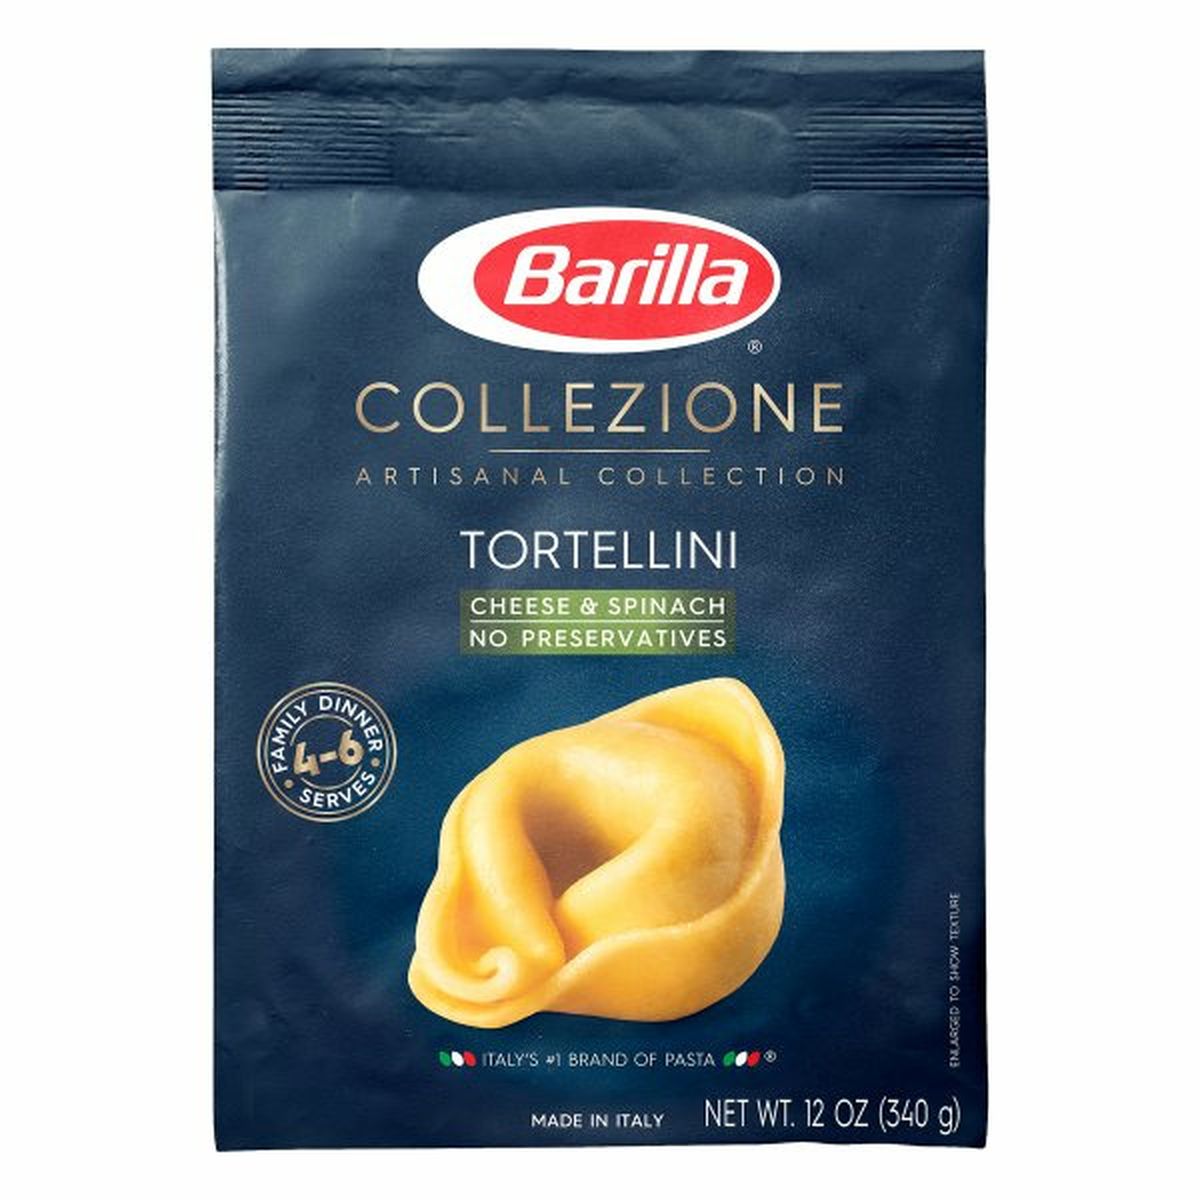 Calories in Barillas Collezione Tortellini, Cheese & Spinach